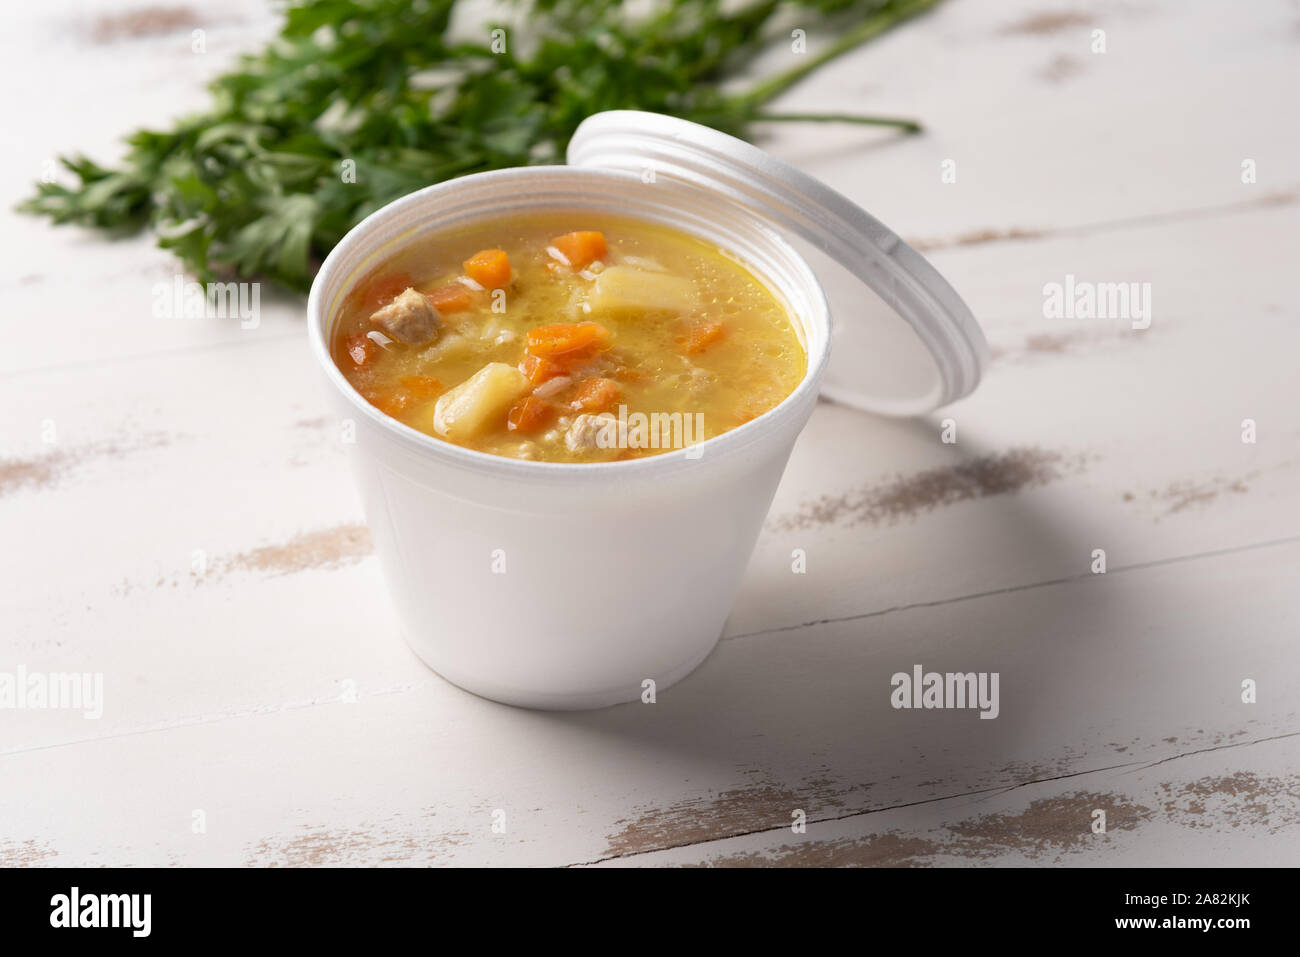 Soupe de légumes dans un bol en plastique jetables avec un couvercle, sur fond blanc. Concept de l'alimentation rapide et facile. Le comportement alimentaire, de la distribution. Banque D'Images